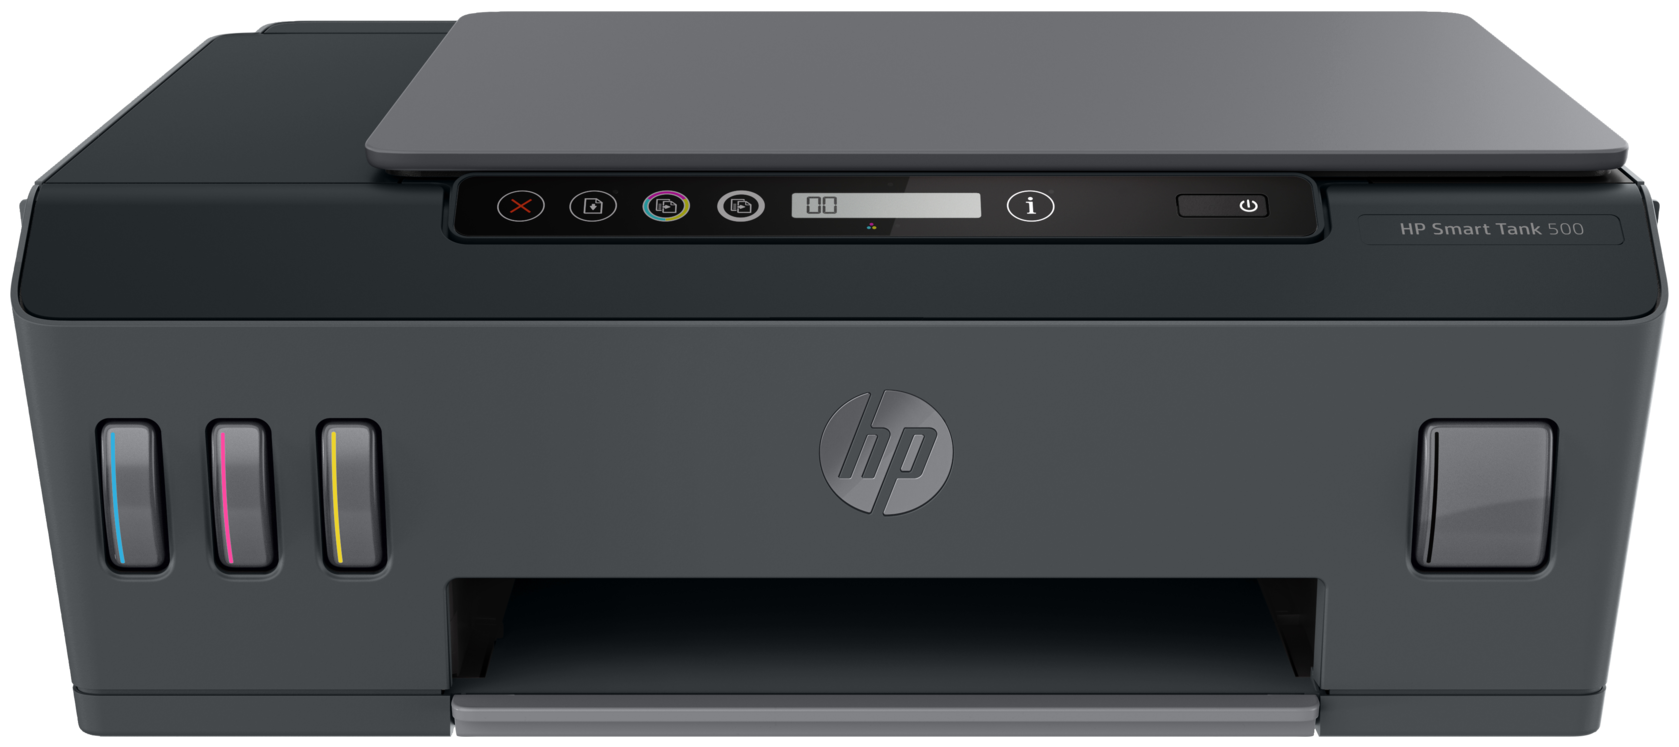 Принтеры и МФУ HP SmartTank 500